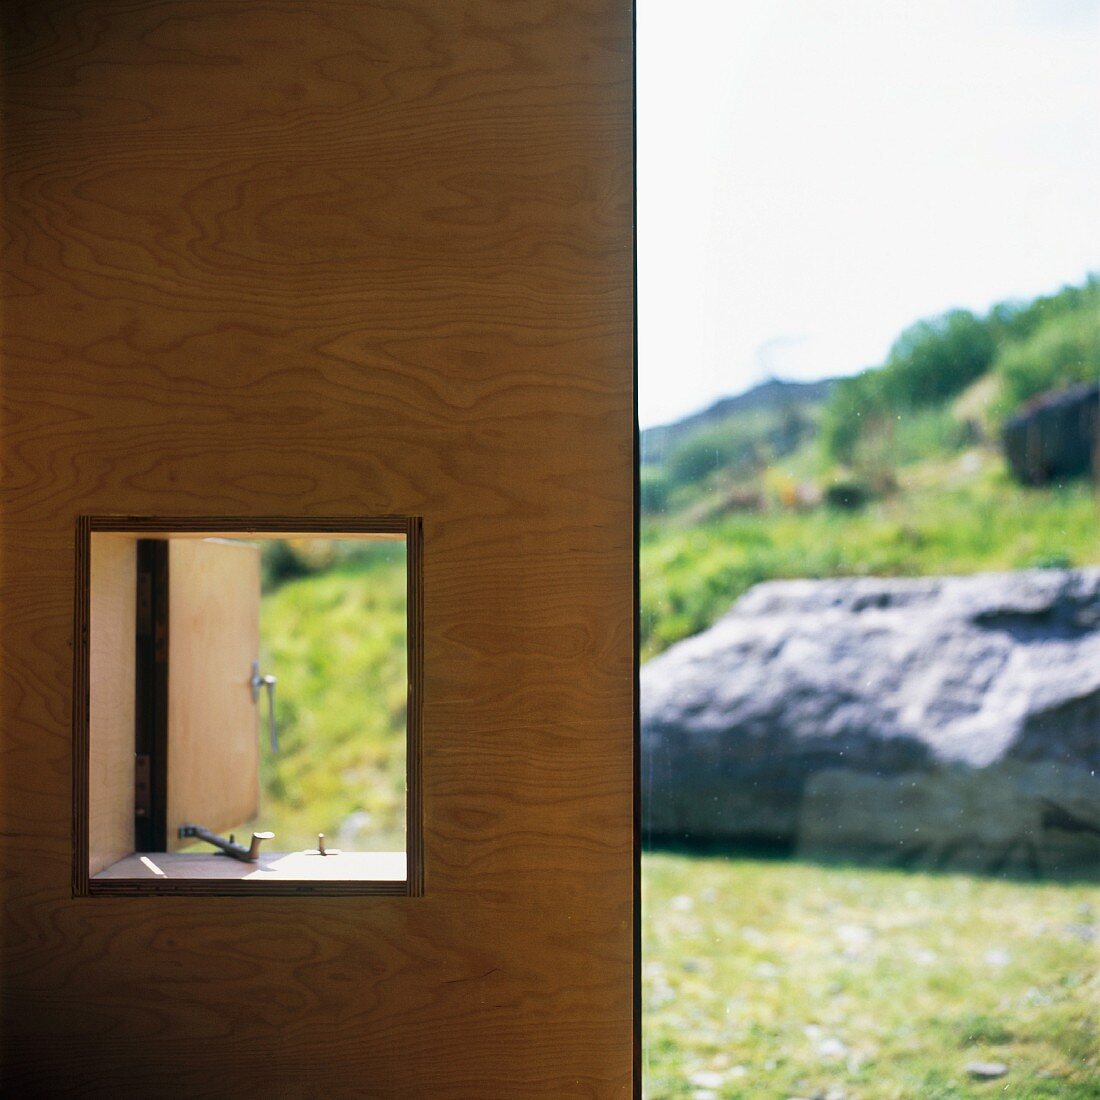 Holzwand mit Fensterausschnitt und Blick auf die Landschaft